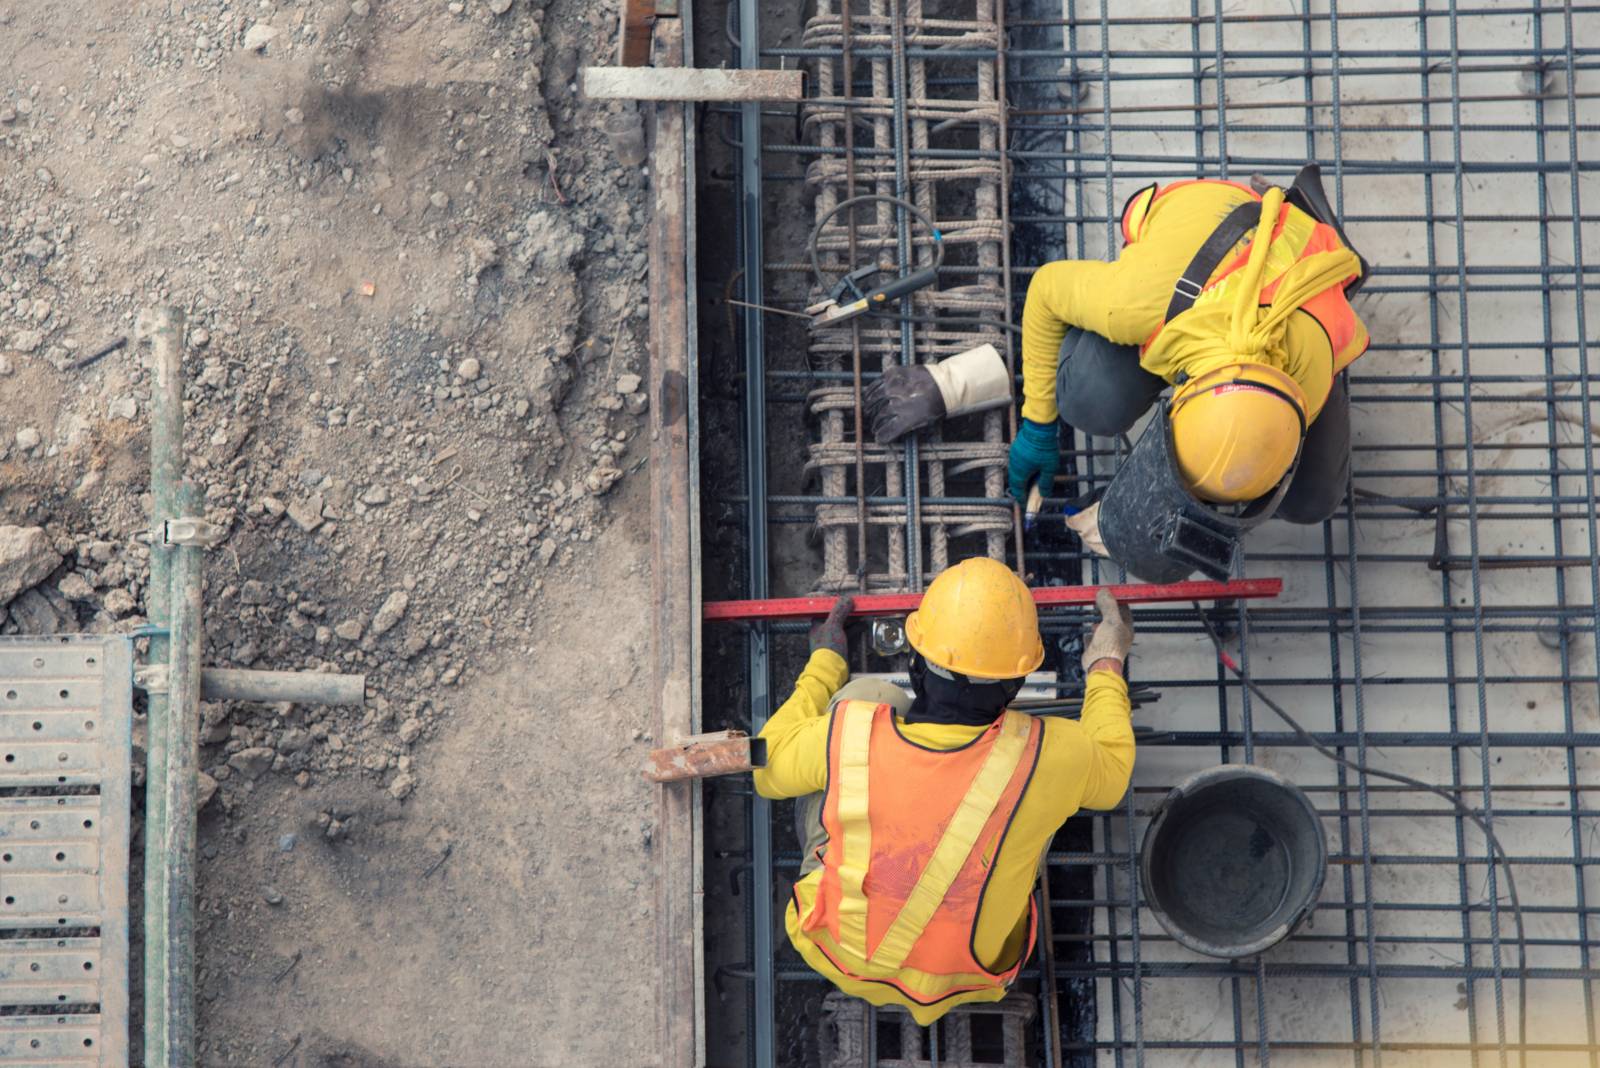 Kuvattu ylhäältä päin, kaksi rakennustyöntekijää työskentelemässä rakennustyömaalla huomioliiveissä.